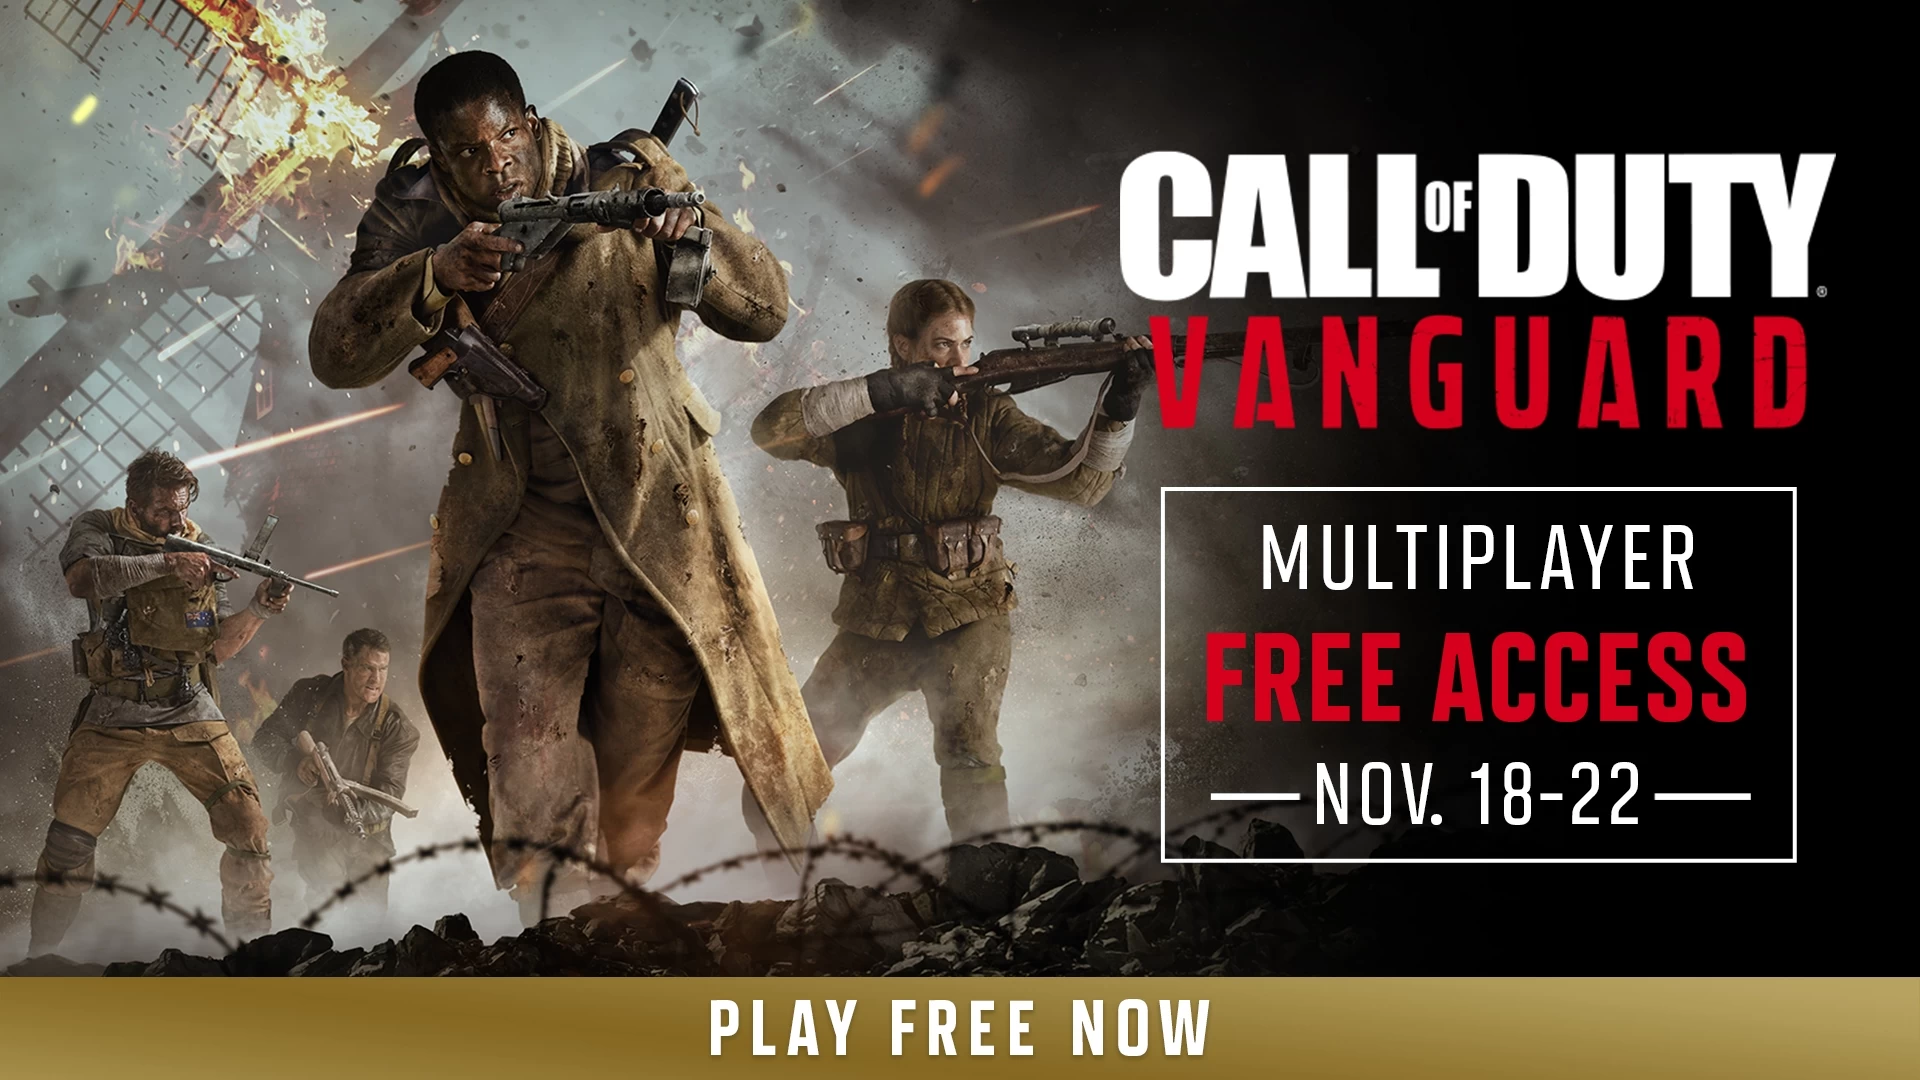 Tutti possono giocare gratuitamente a Call of Duty: Vanguard fino al 22 novembre